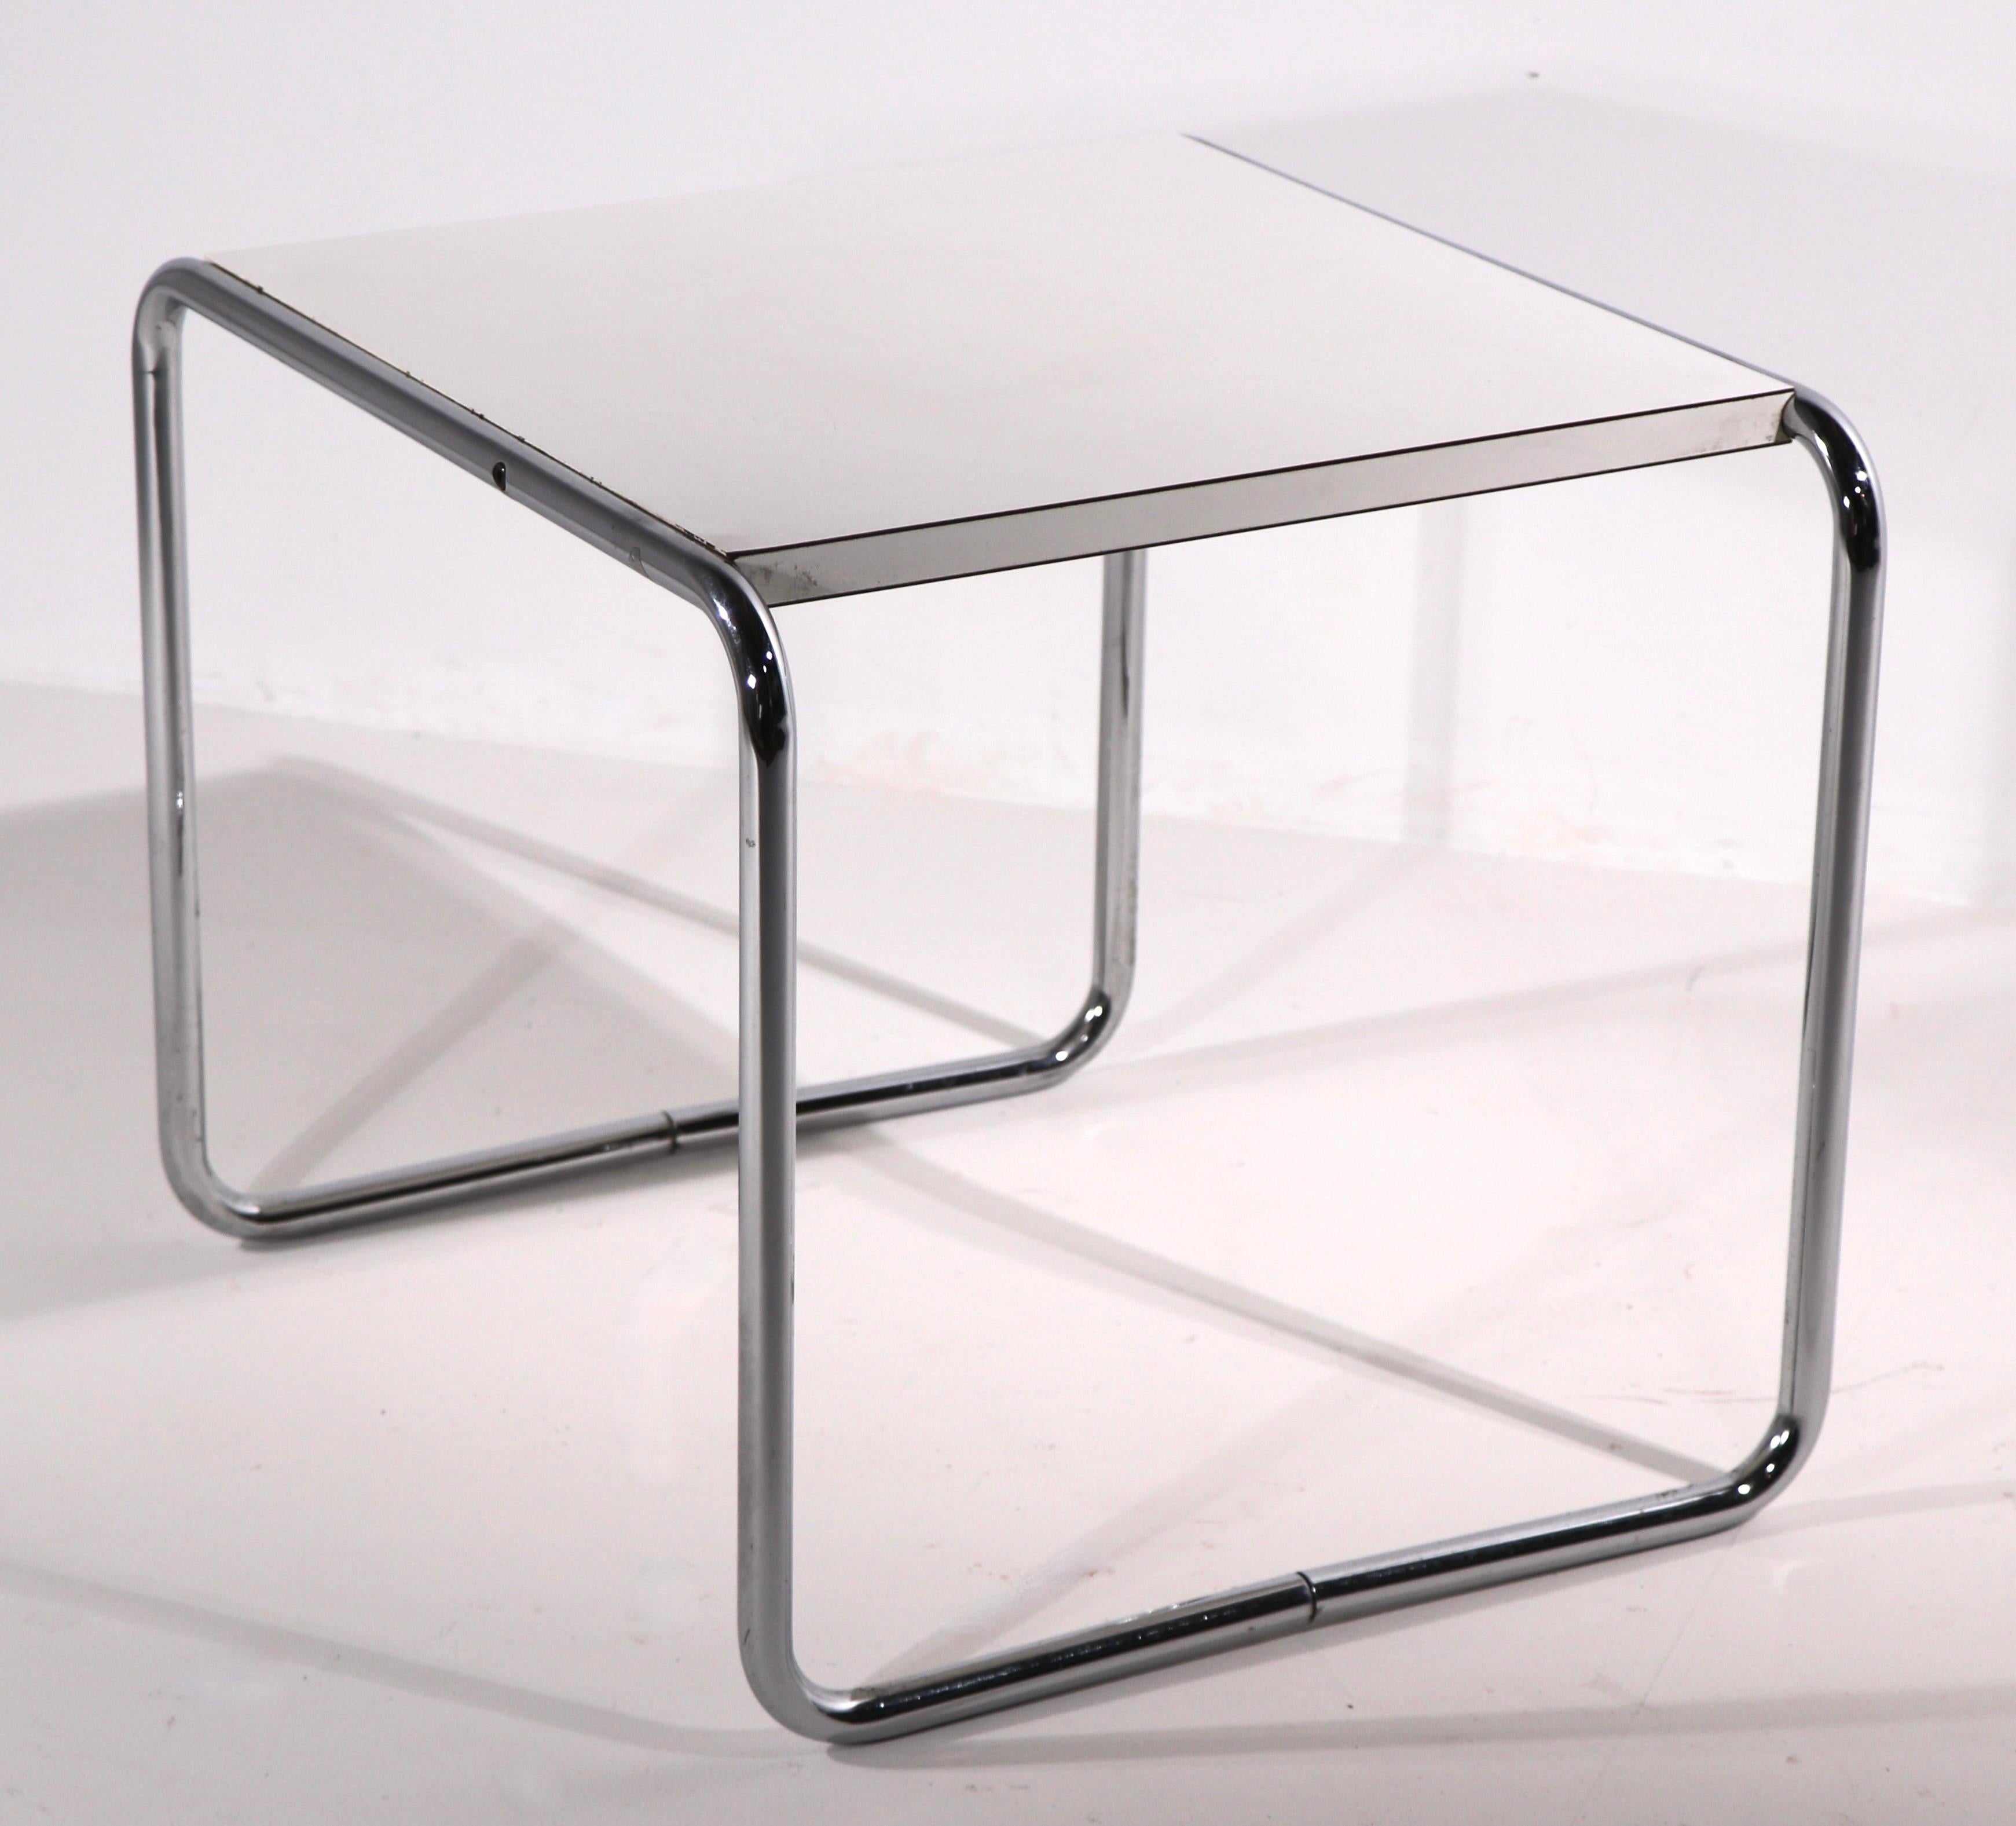 Superbe ensemble complet de tables (Laccio) conçues par l'école Bauhaus Breuer et fabriquées par Stendig, en Finlande. Cet ensemble vintage comprend 2 tables basses rectangulaires (53 L x 19 P x 13 H), l'une avec un plateau en stratifié noir,